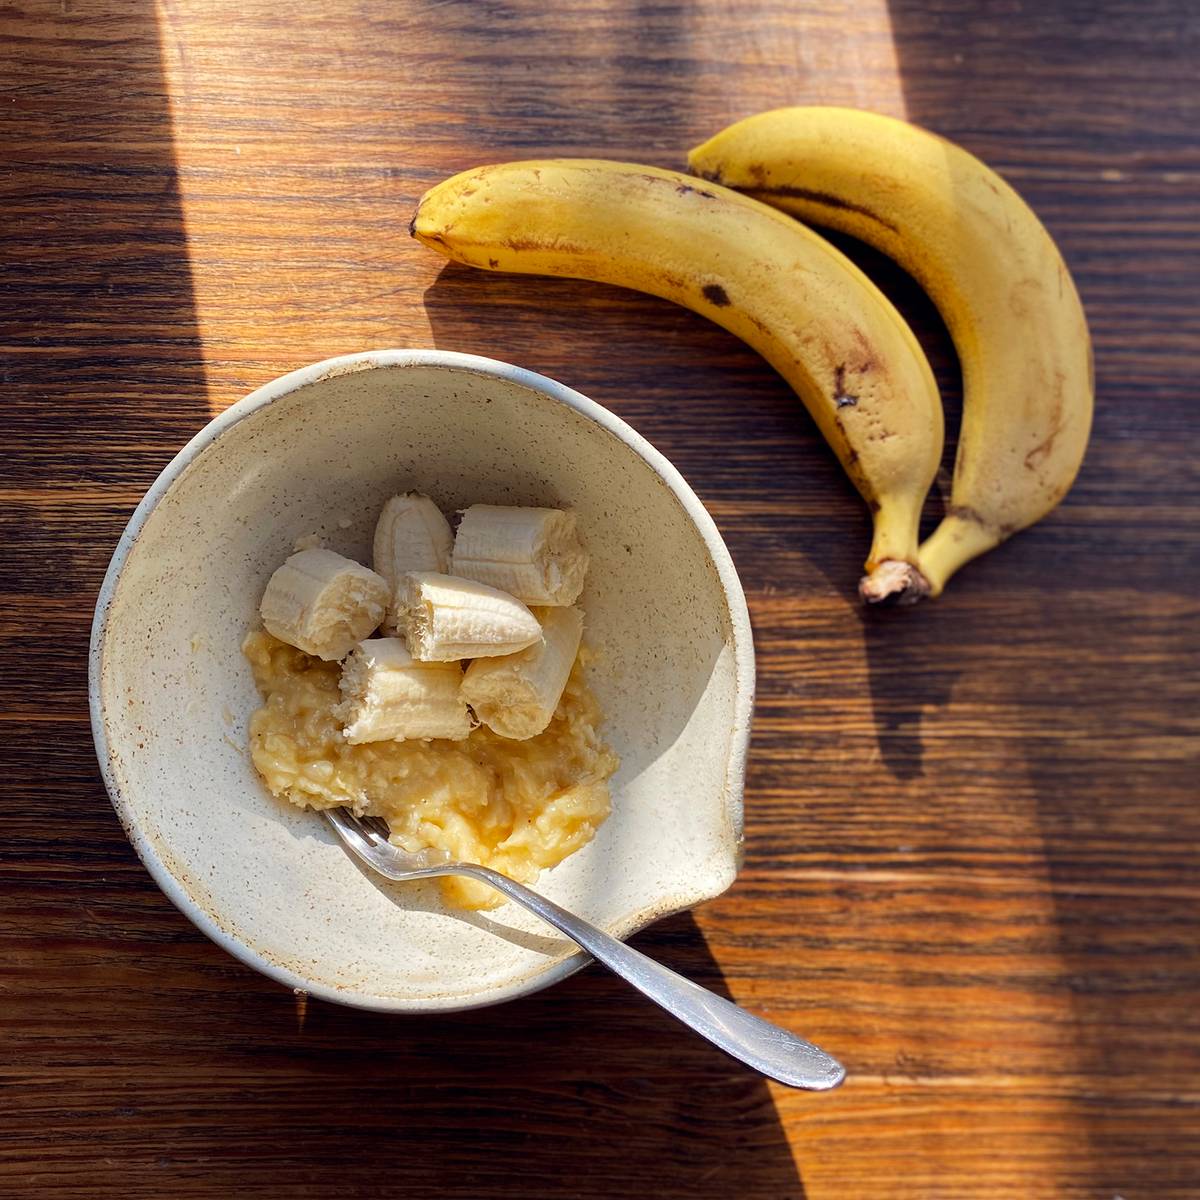 Более мягкие бананы используйте для&nbsp;теста, менее спелый оставьте для&nbsp;украшения